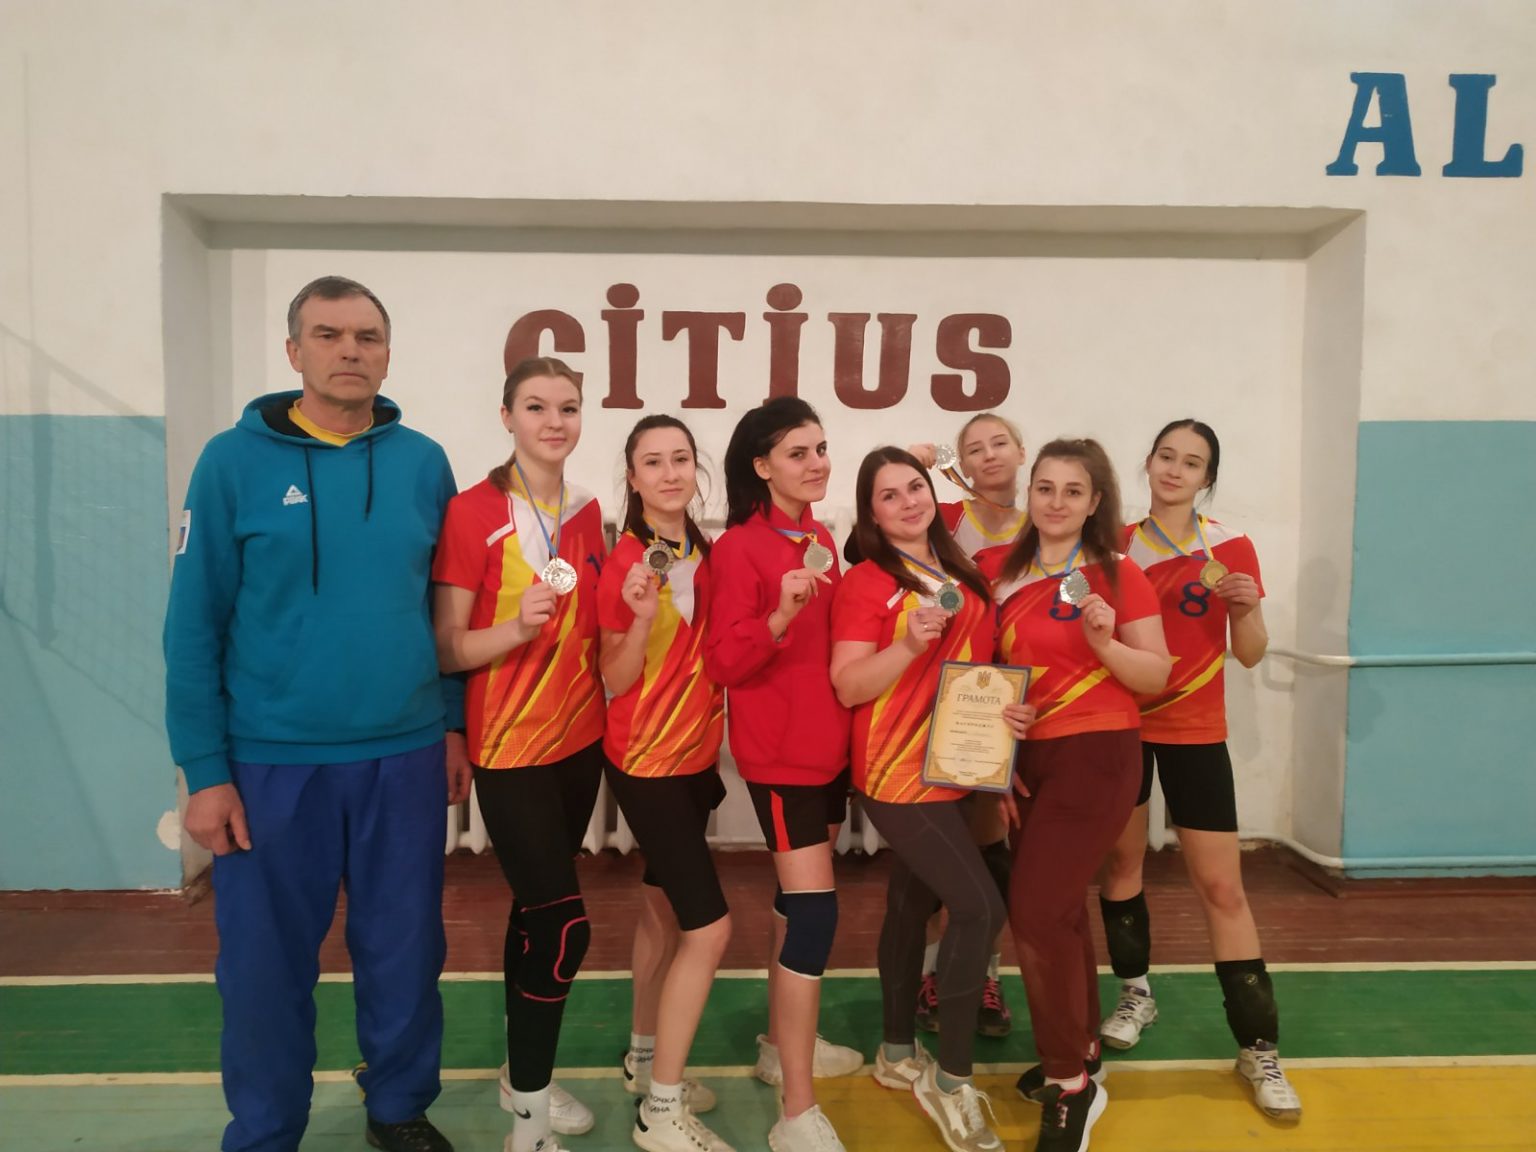 Напередодні 8 березня у Переяславському ЦПТО змагались жіночі команди з волейболу: хто виборов перехідний кубок